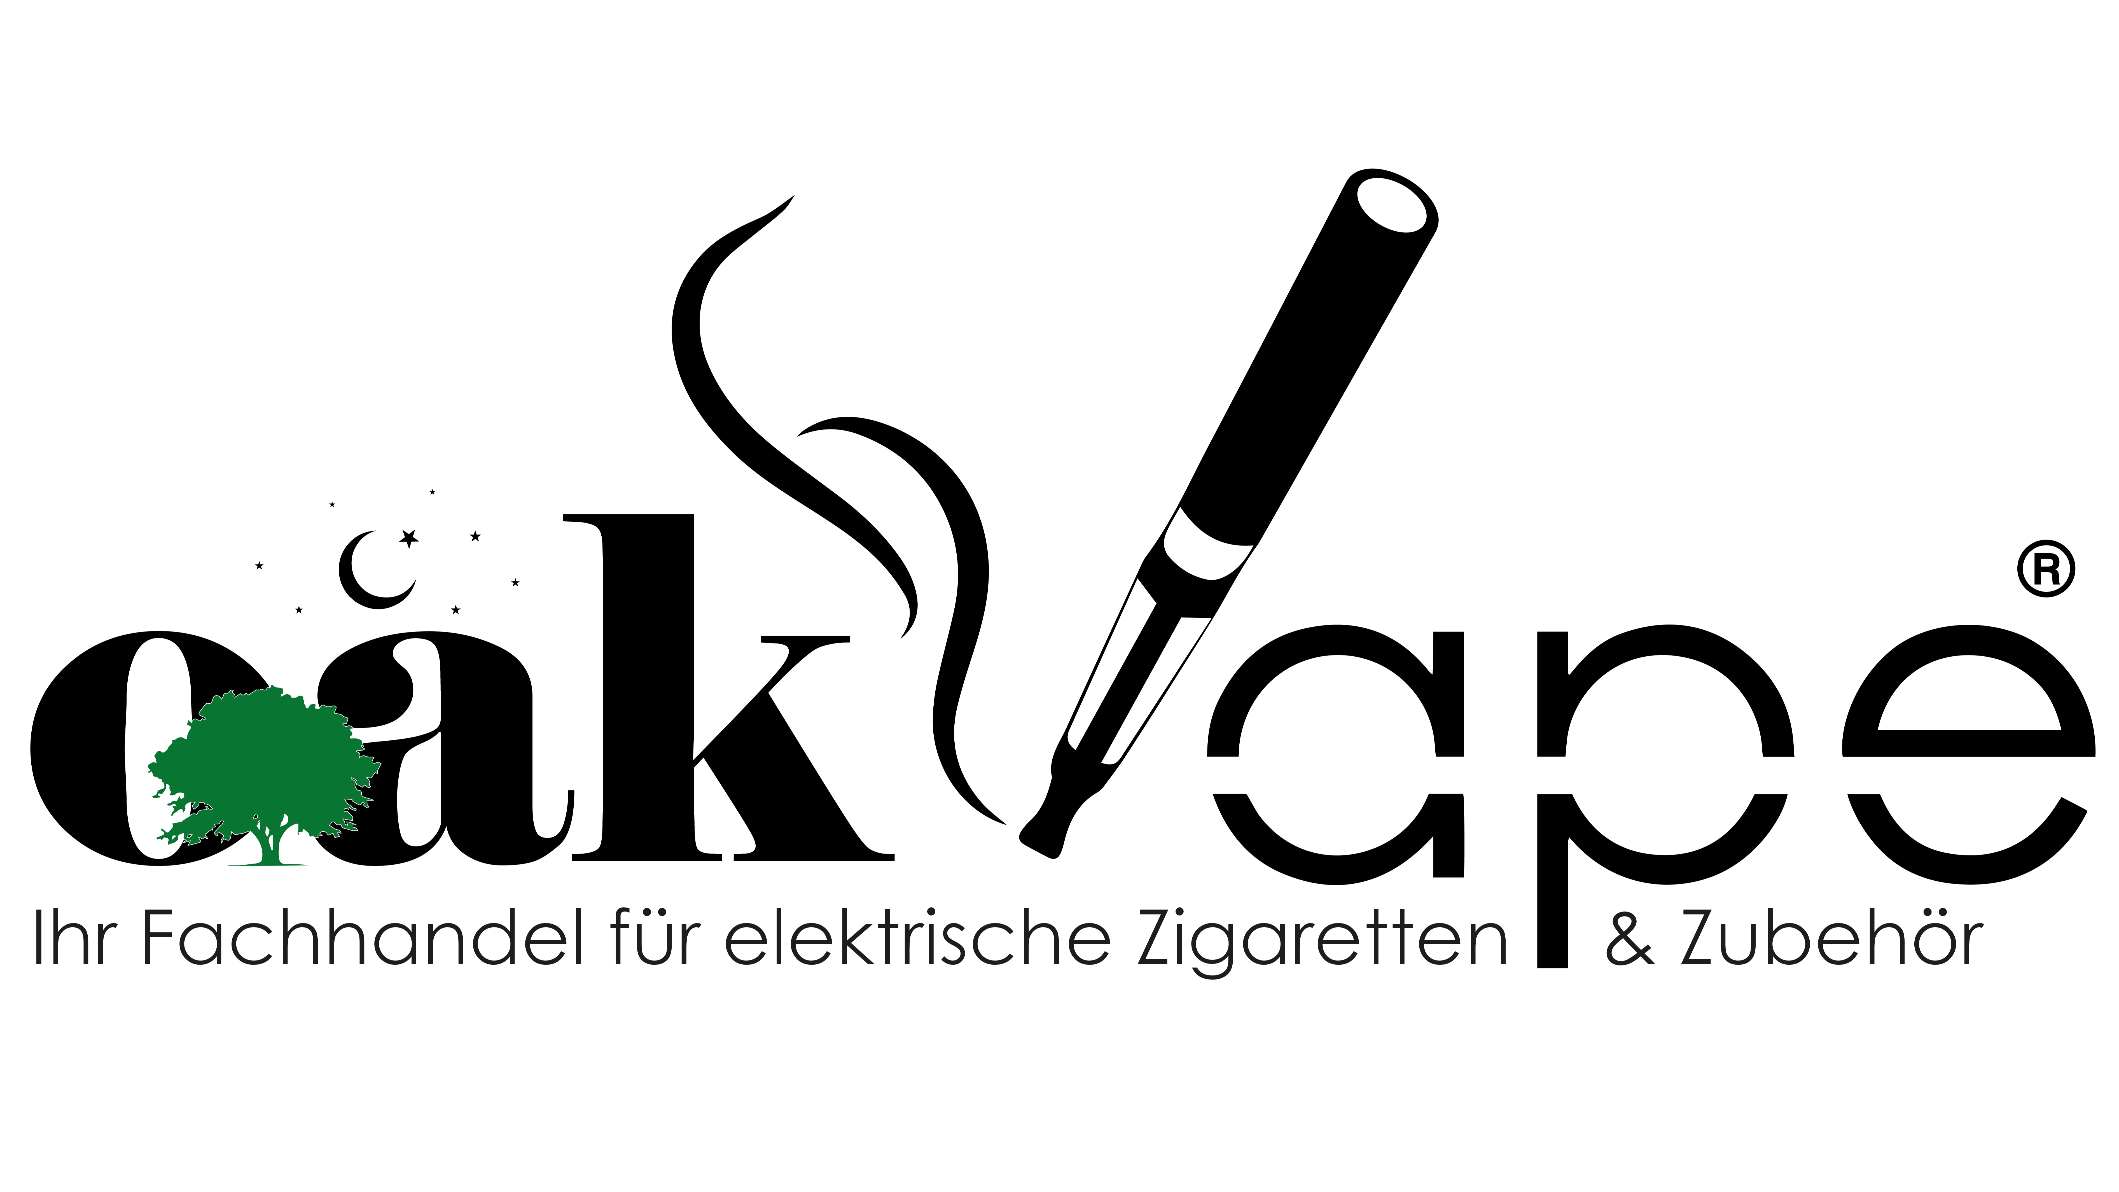 Bild 1 oakVape / vapooor - Ihr Fachhandel für elektrische Zigaretten & Zubehör Liquid Aroma Base Kiosk Vape Store in Göppingen in Göppingen